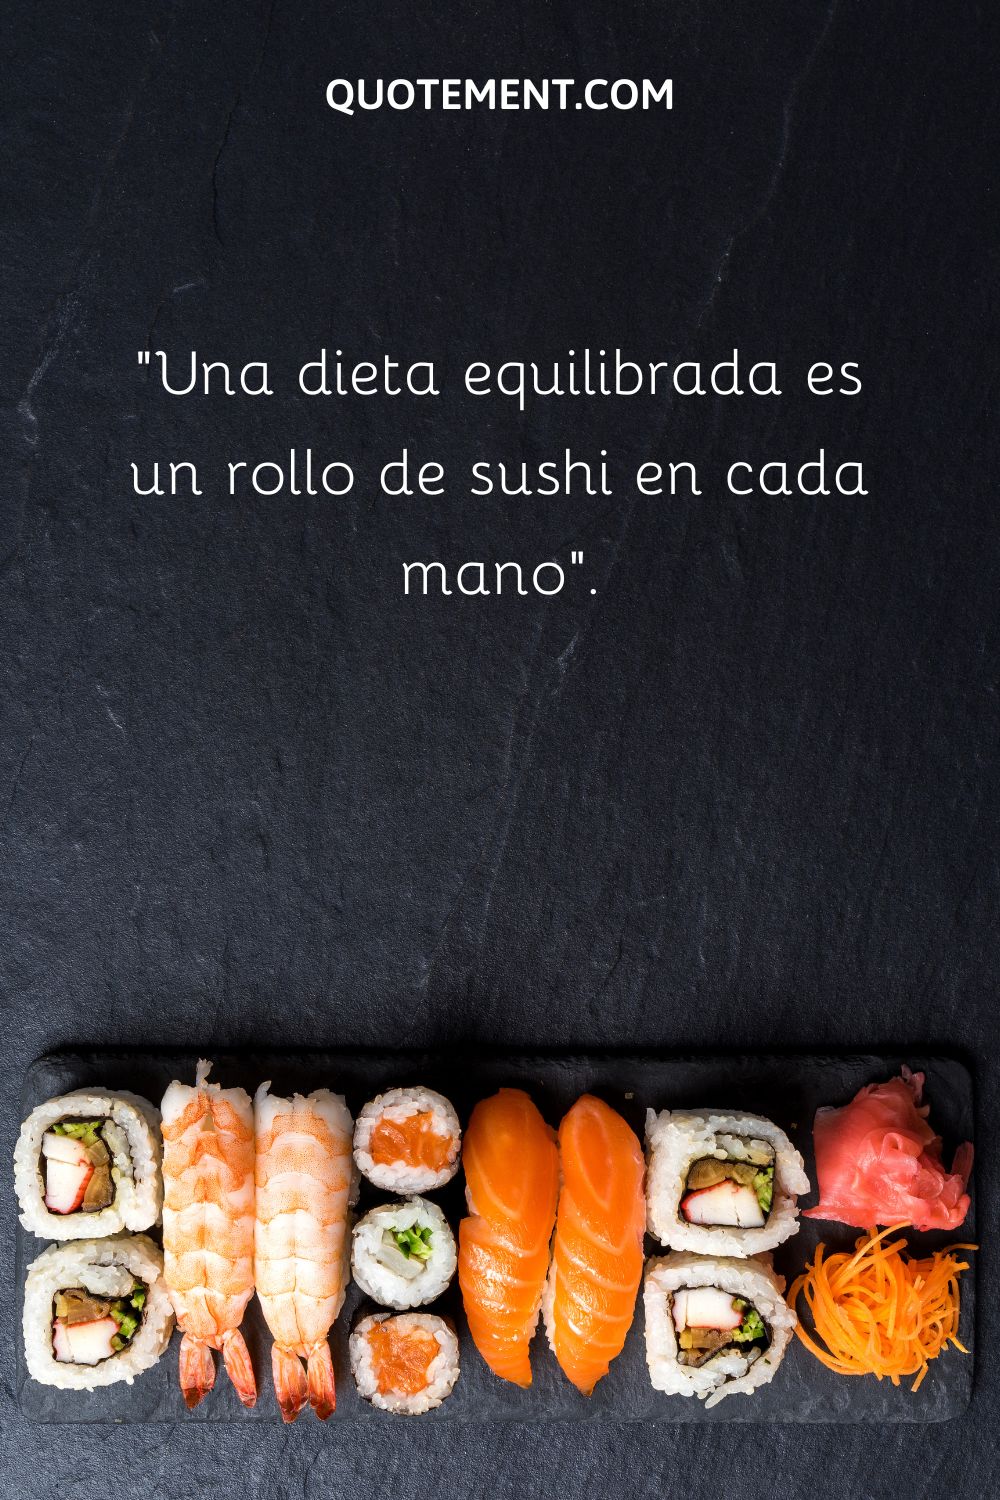 Una dieta equilibrada es un rollo de sushi en cada mano.